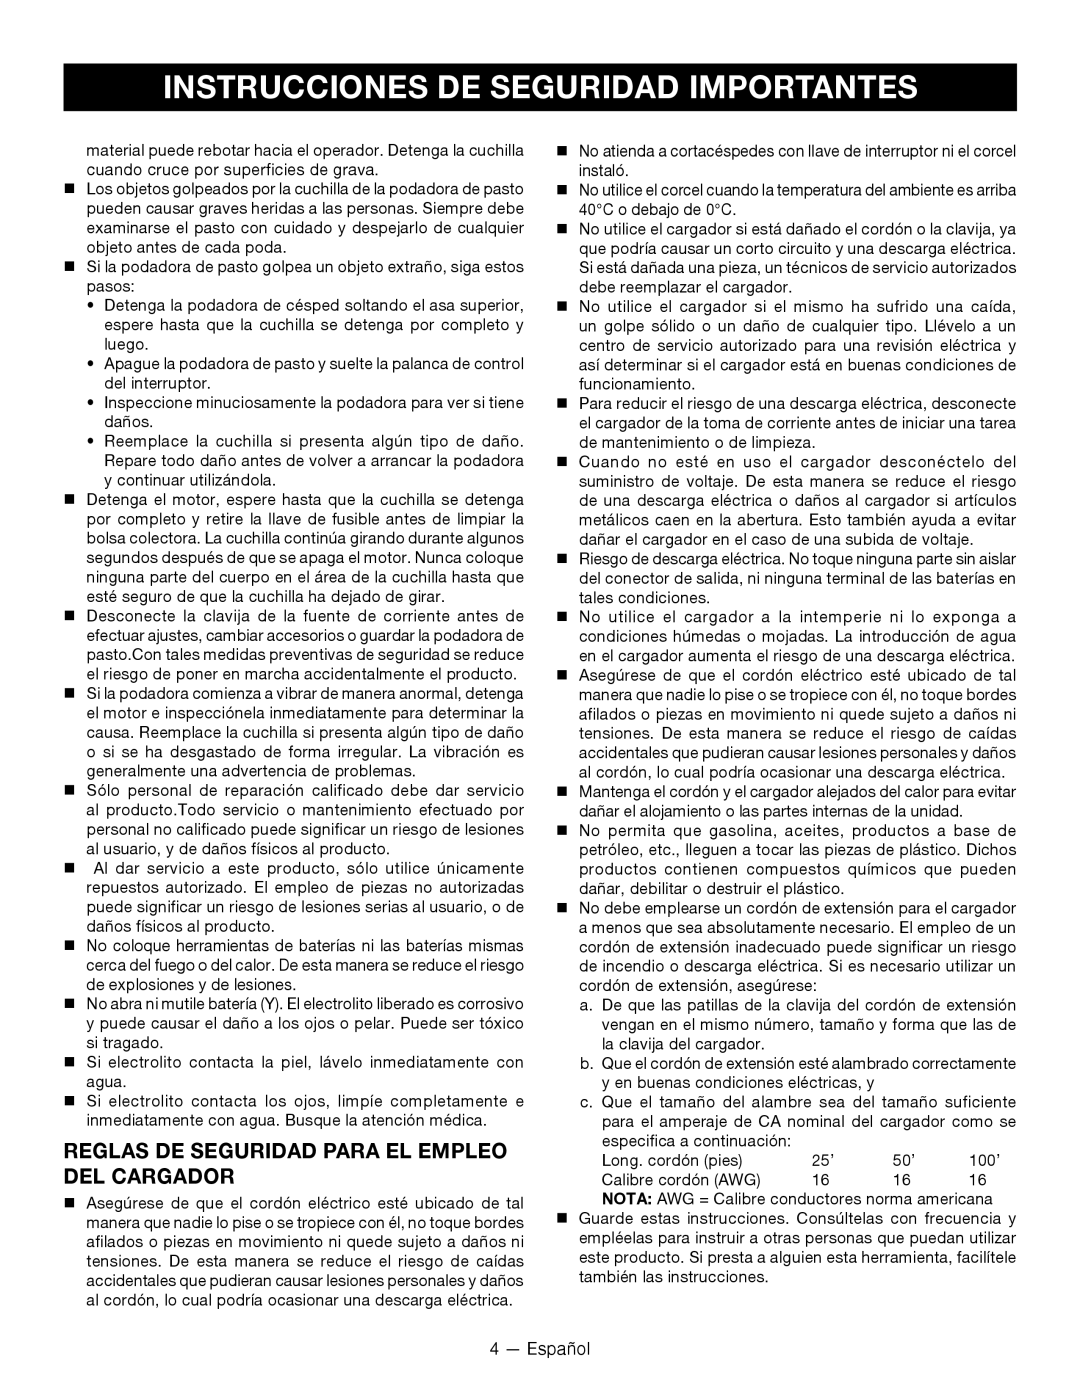 Ryobi RY14110 Reglas De Seguridad Para El Empleo Del Cargador, Instrucciones De Seguridad Importantes, Español 